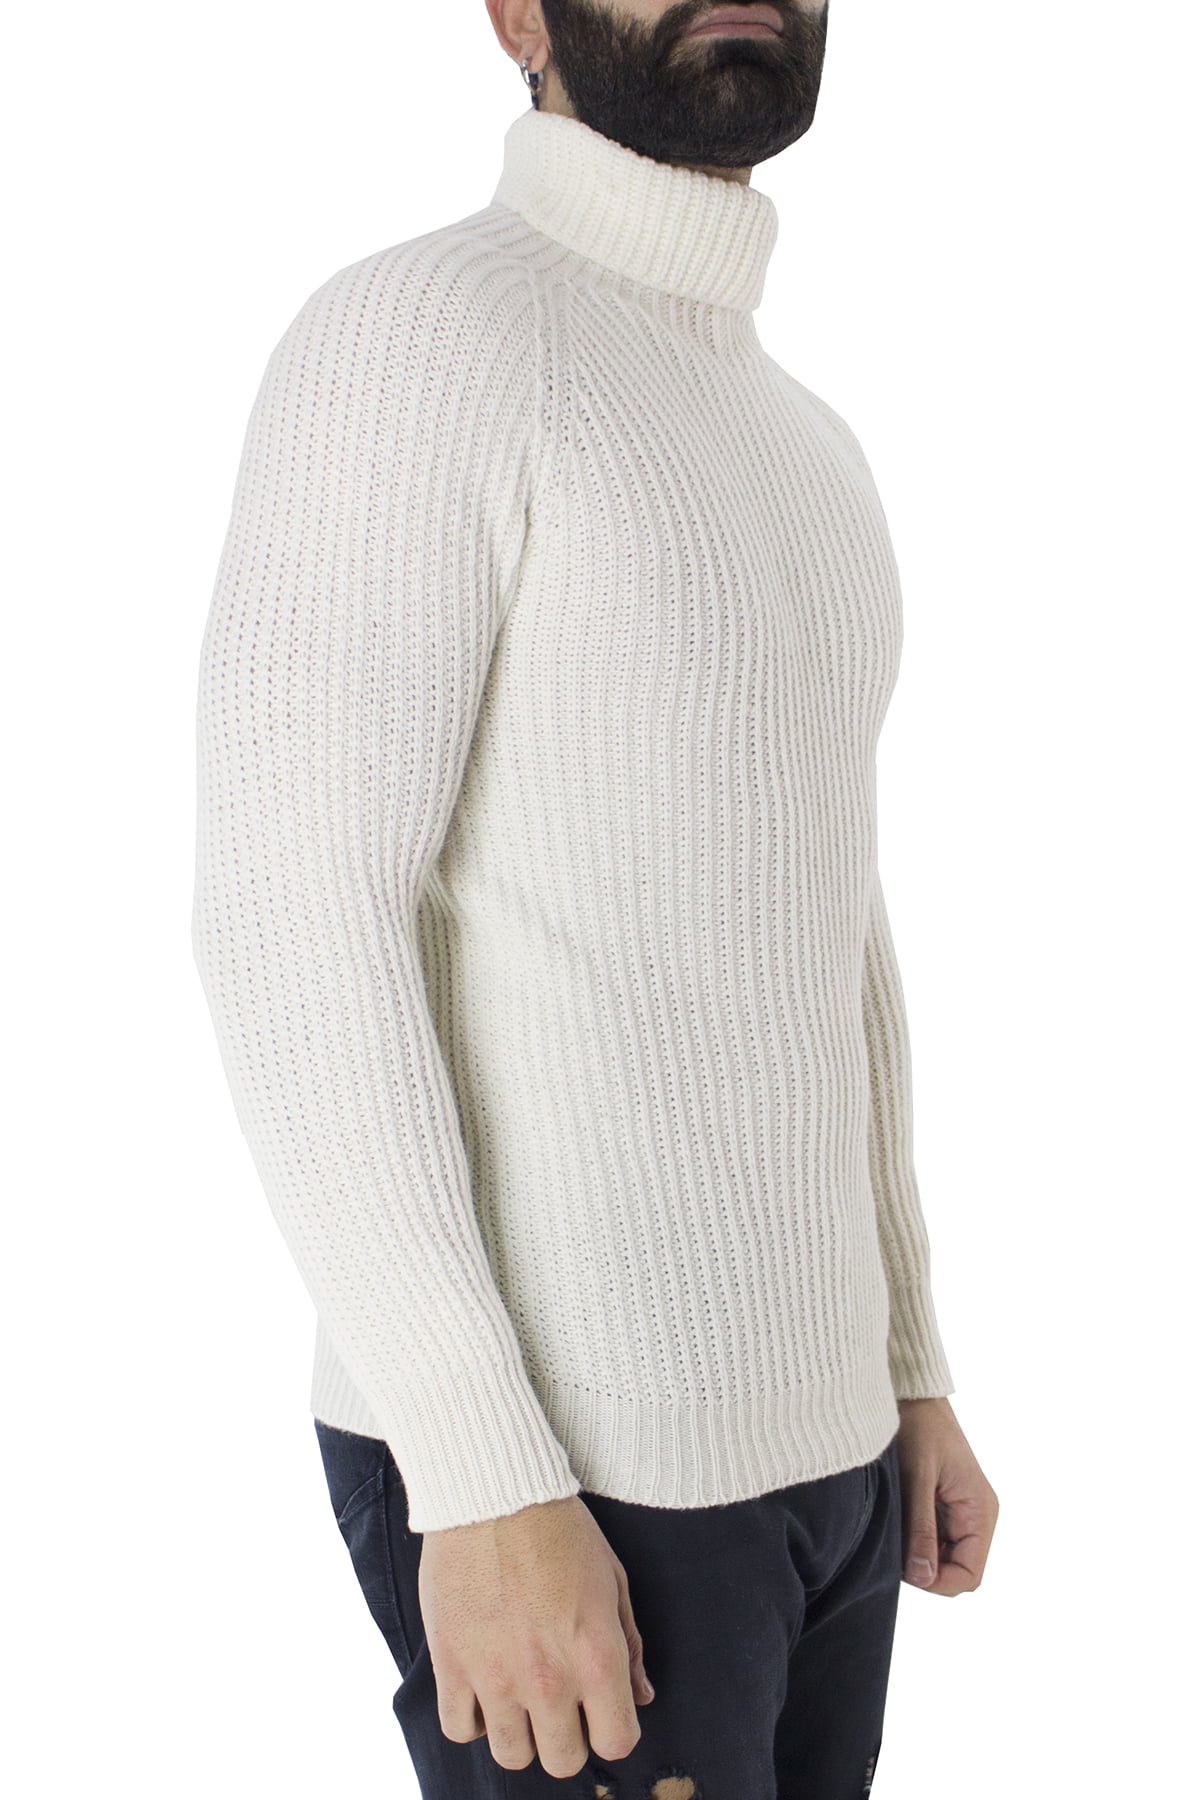 Maglione uomo collo alto bianco in lana merinos a costa inglese slim fit made in italy